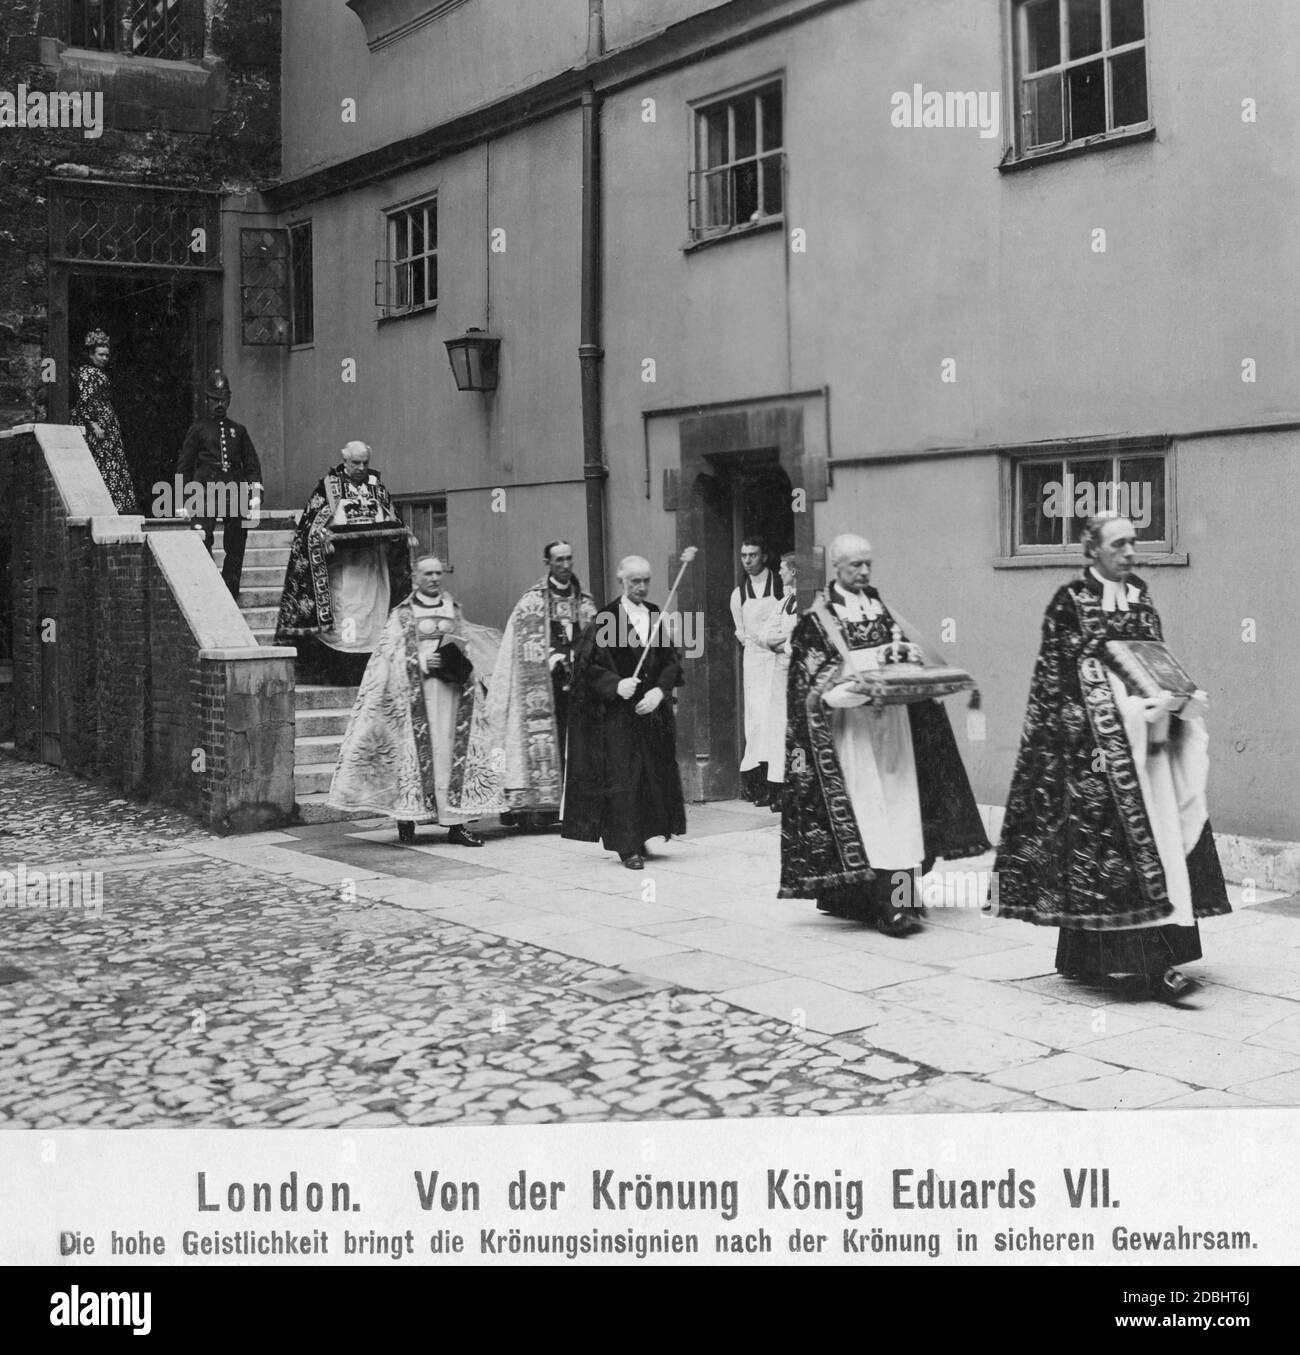 L'alto clero restituì le insegne reali alla custodia dell'Abbazia di Westminster dopo l'incoronazione di Edoardo VII il 9 agosto 1902. Foto Stock